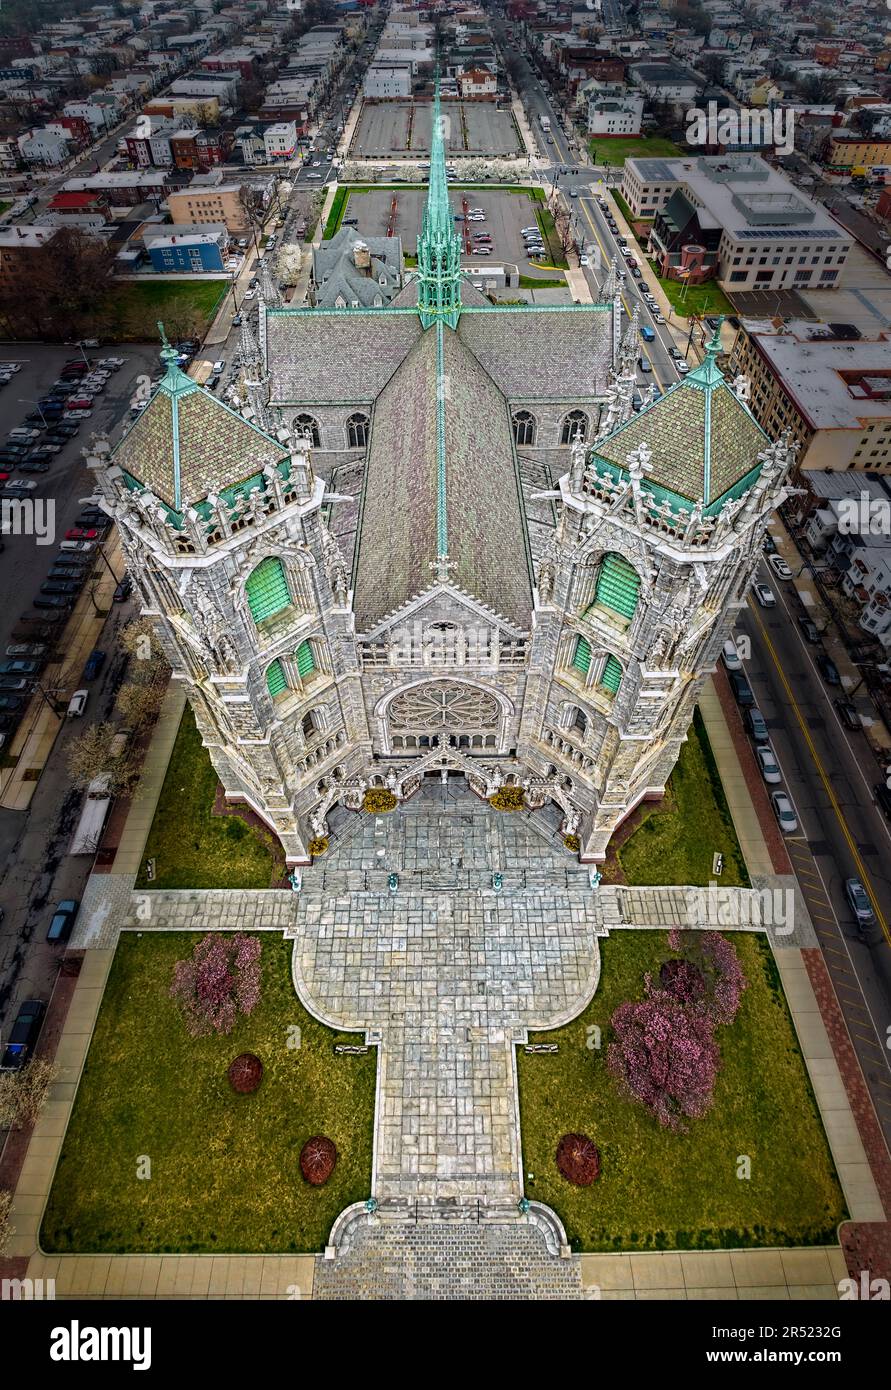 Cathédrale basilique du Sacré-cœur NJ - vue aérienne de la Renaissance gothique française détails architecturaux de la plus grande cathédrale de 5th dans le Stat Uni Banque D'Images